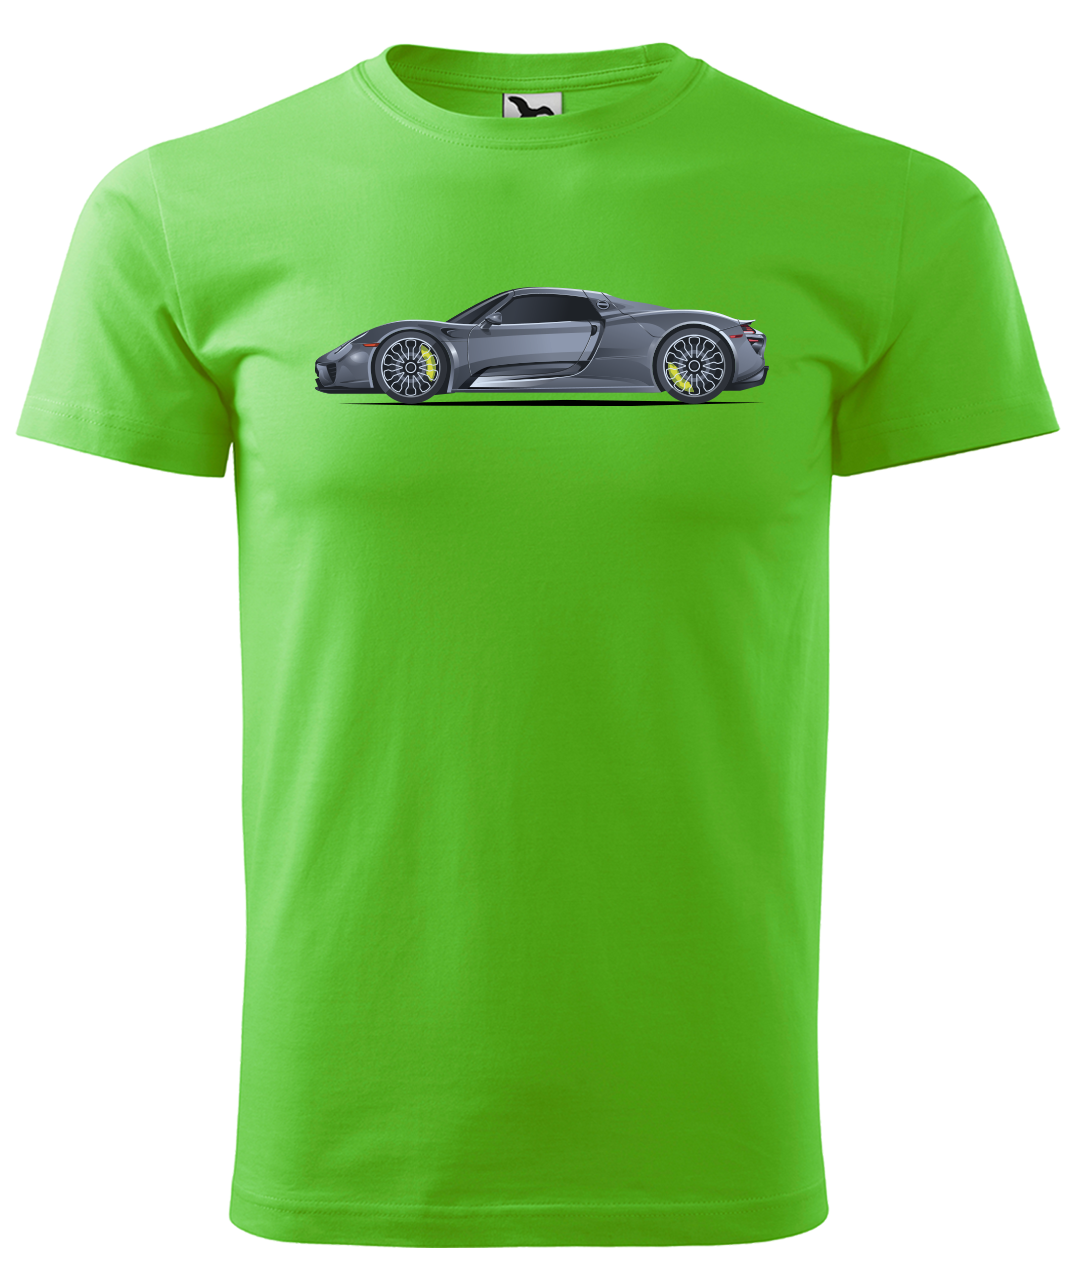 Dětské tričko s autem - Šedý sporťák Velikost: 6 let / 122 cm, Barva: Apple Green (92)